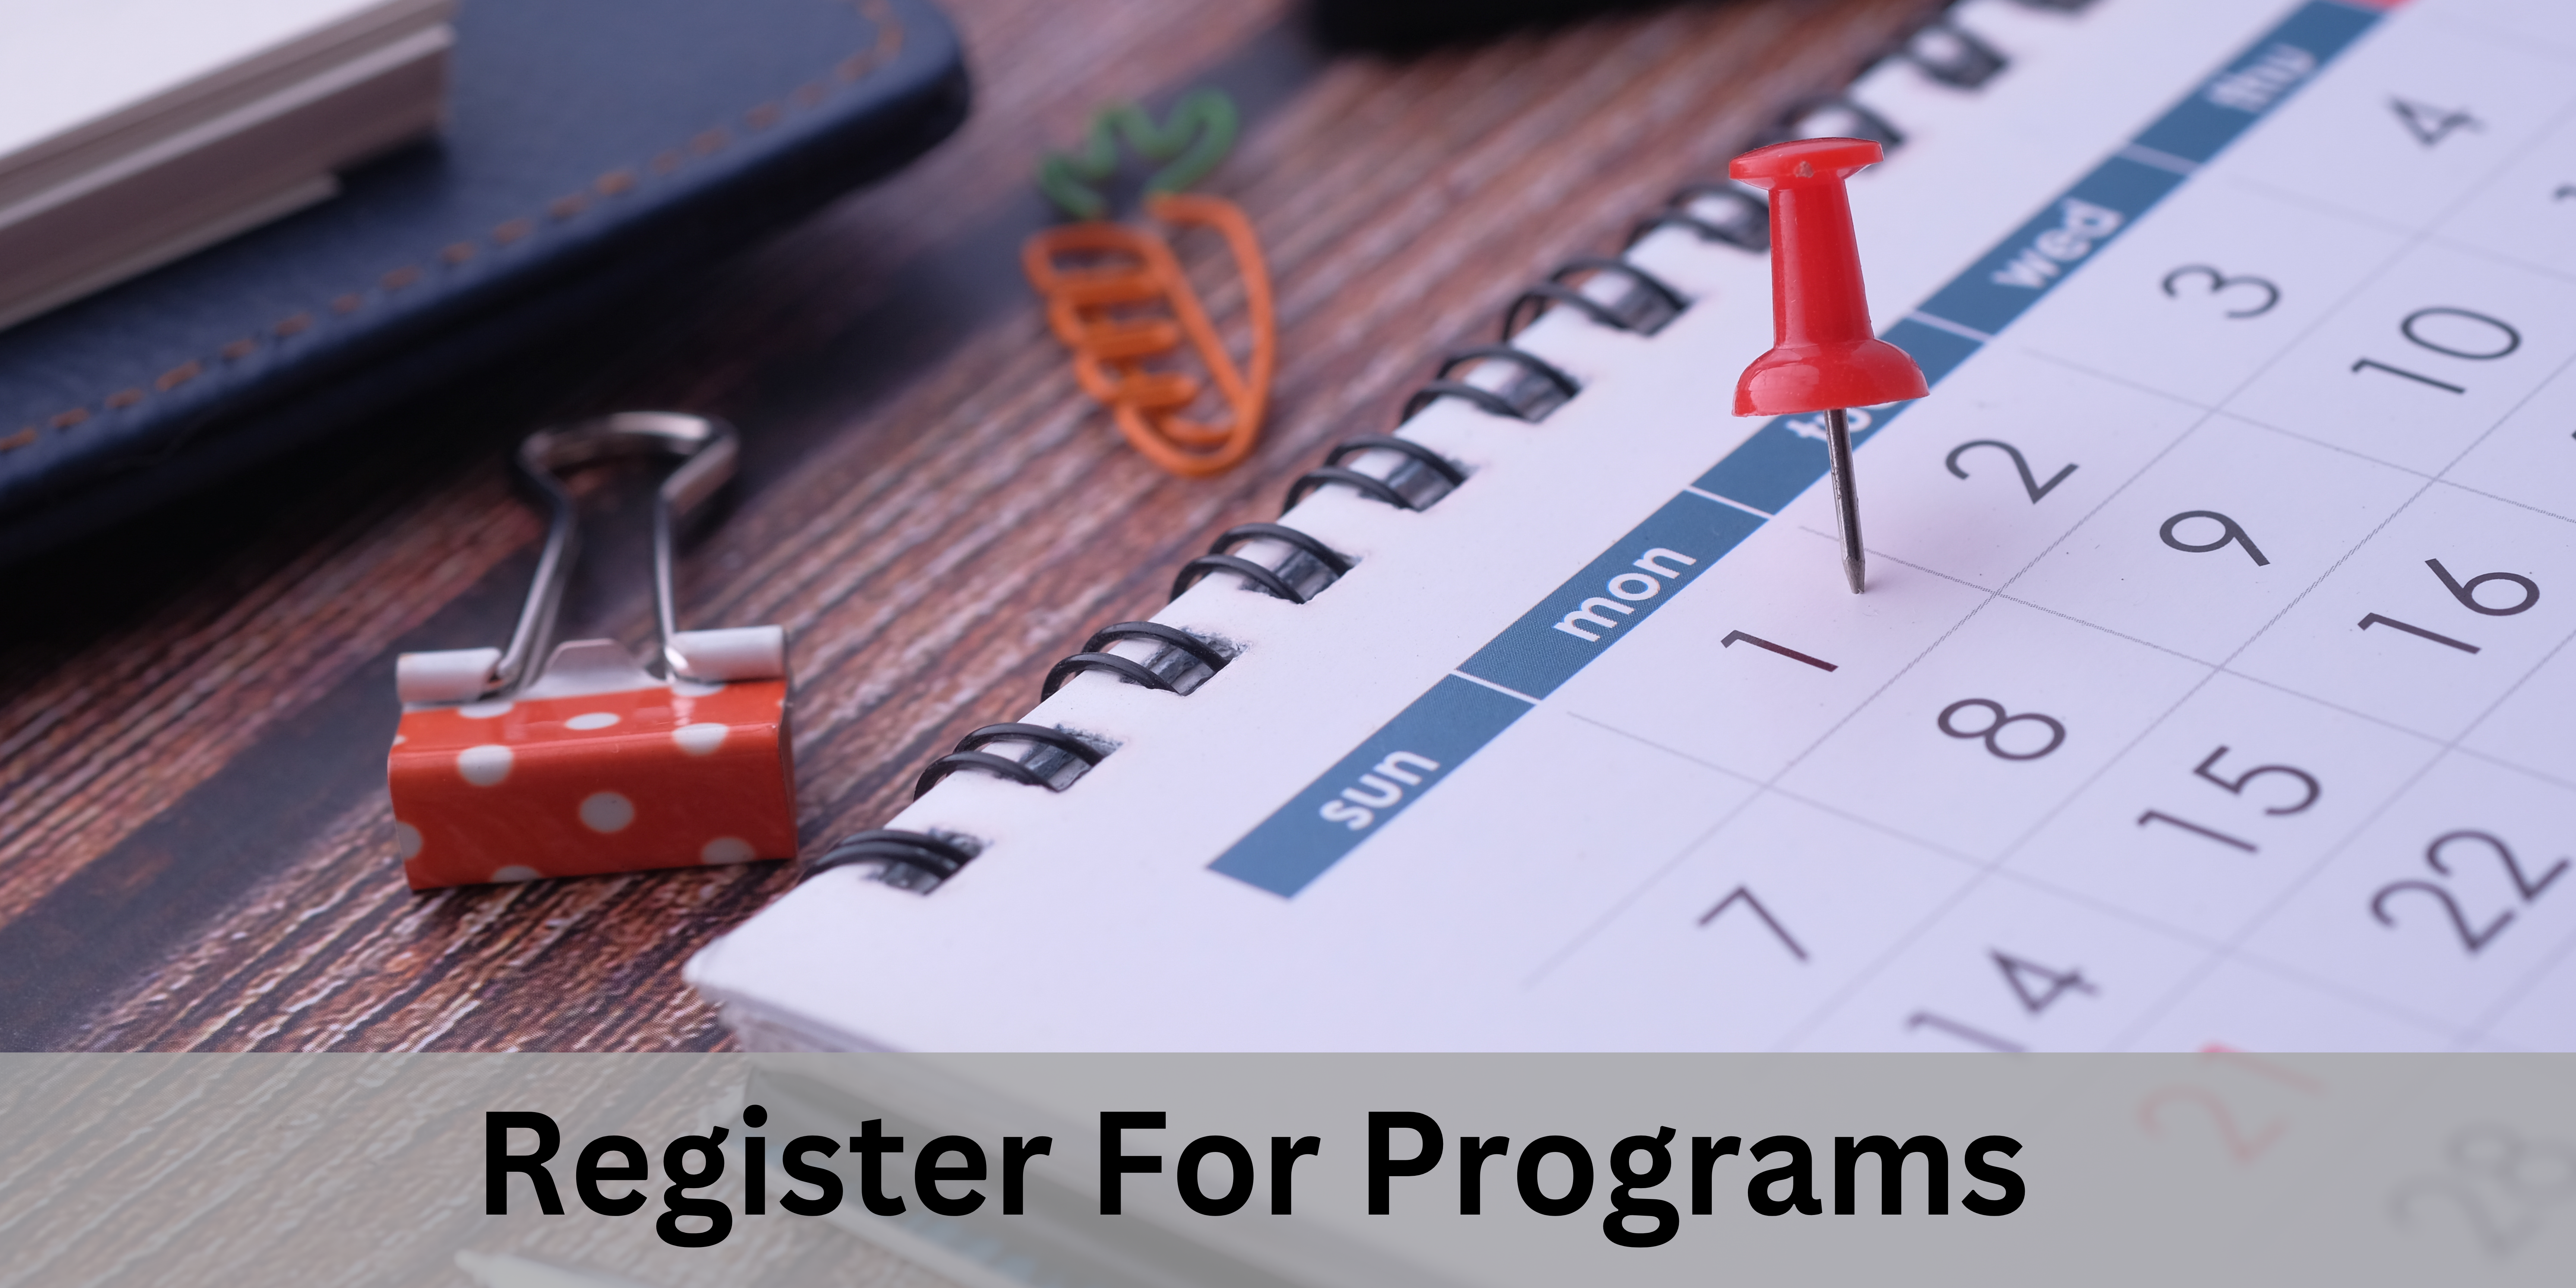 Register for Programs